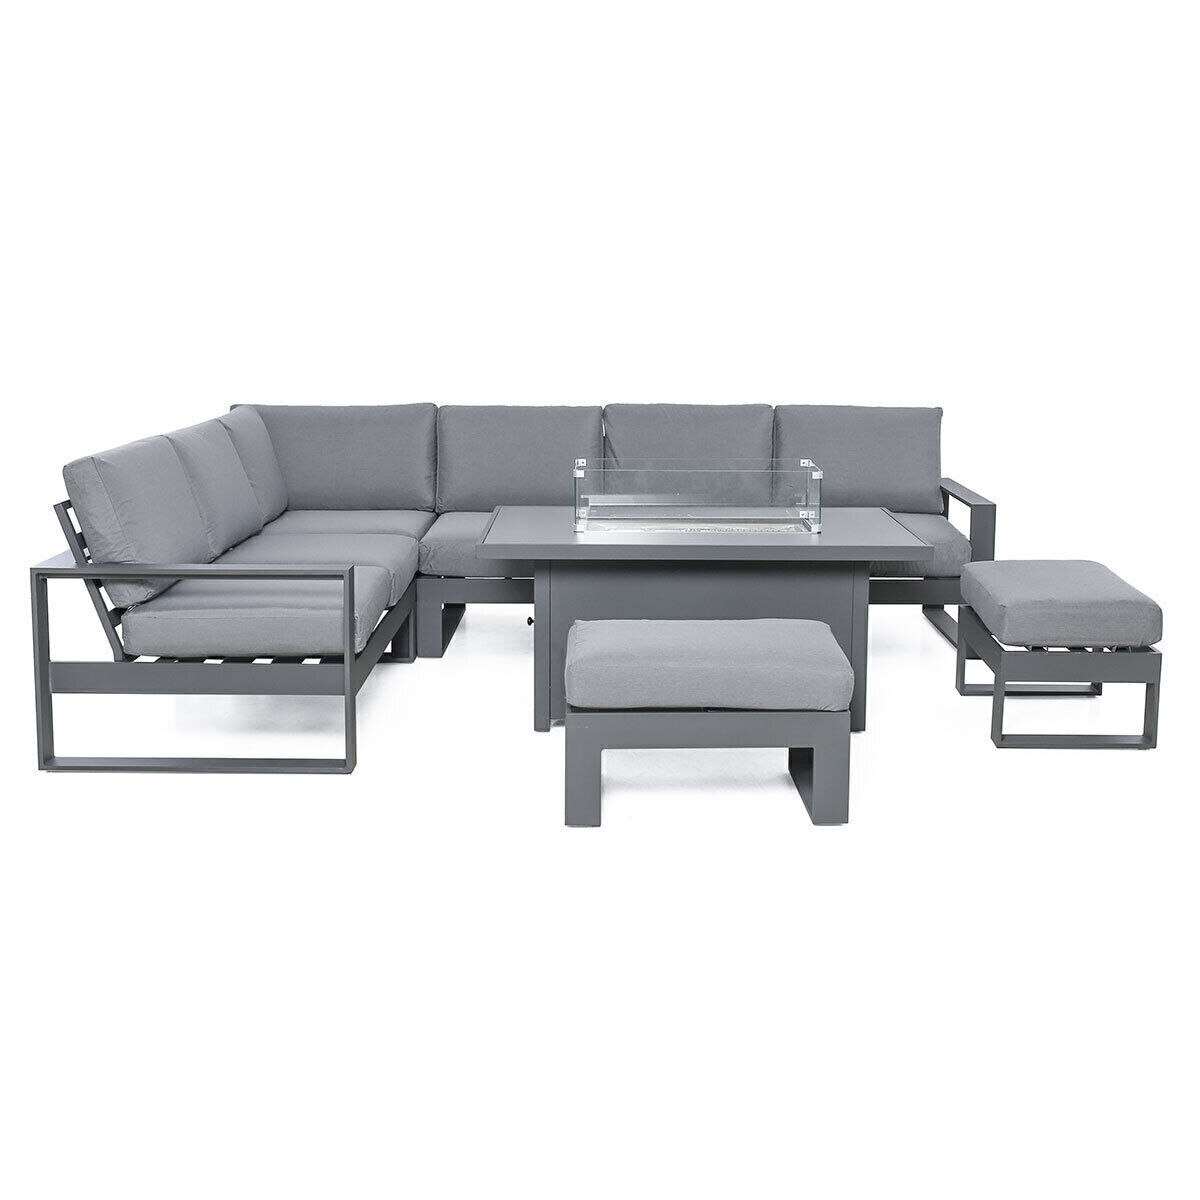 Maze - Amalfi Large Aluminium Corner Dining Set with Fire Pit Table & Footstools - Grey product image